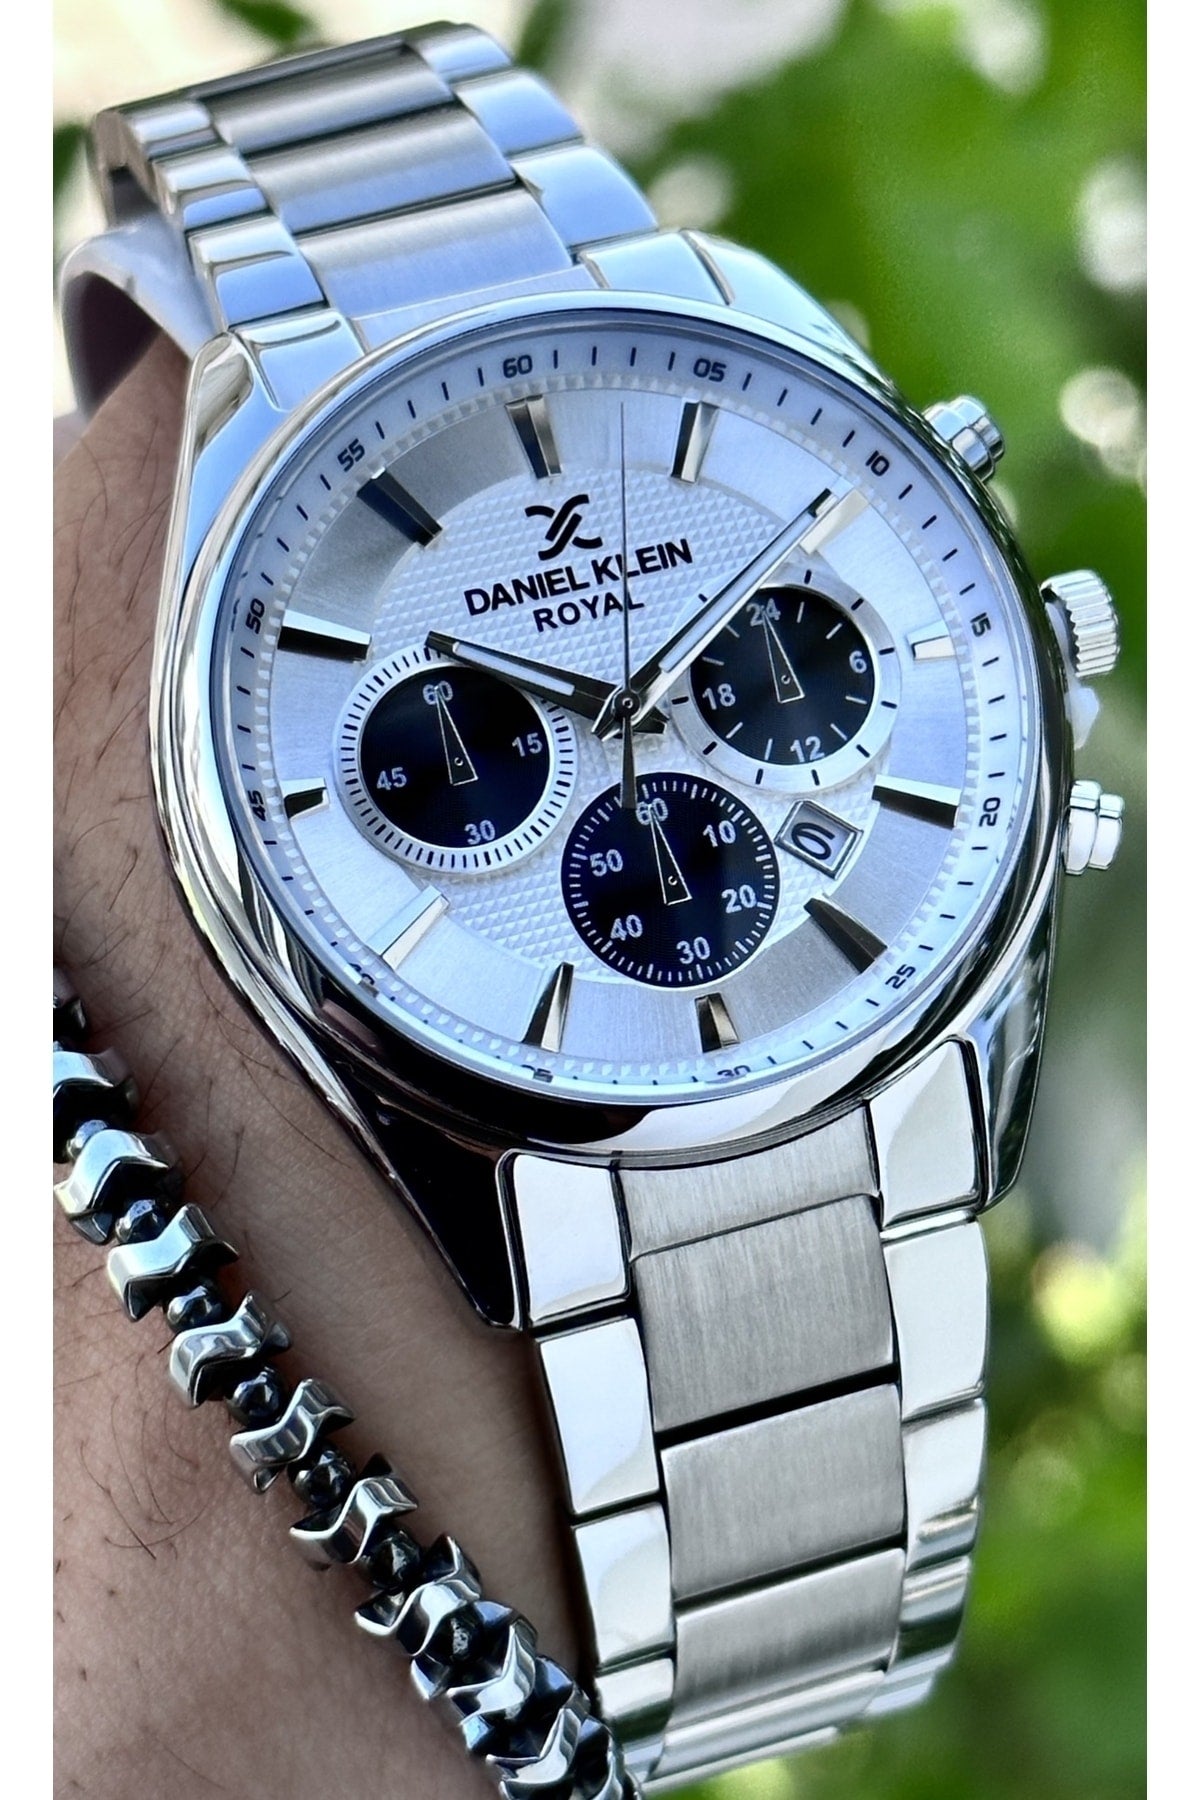 Men's Steel Wristwatch+bracelet